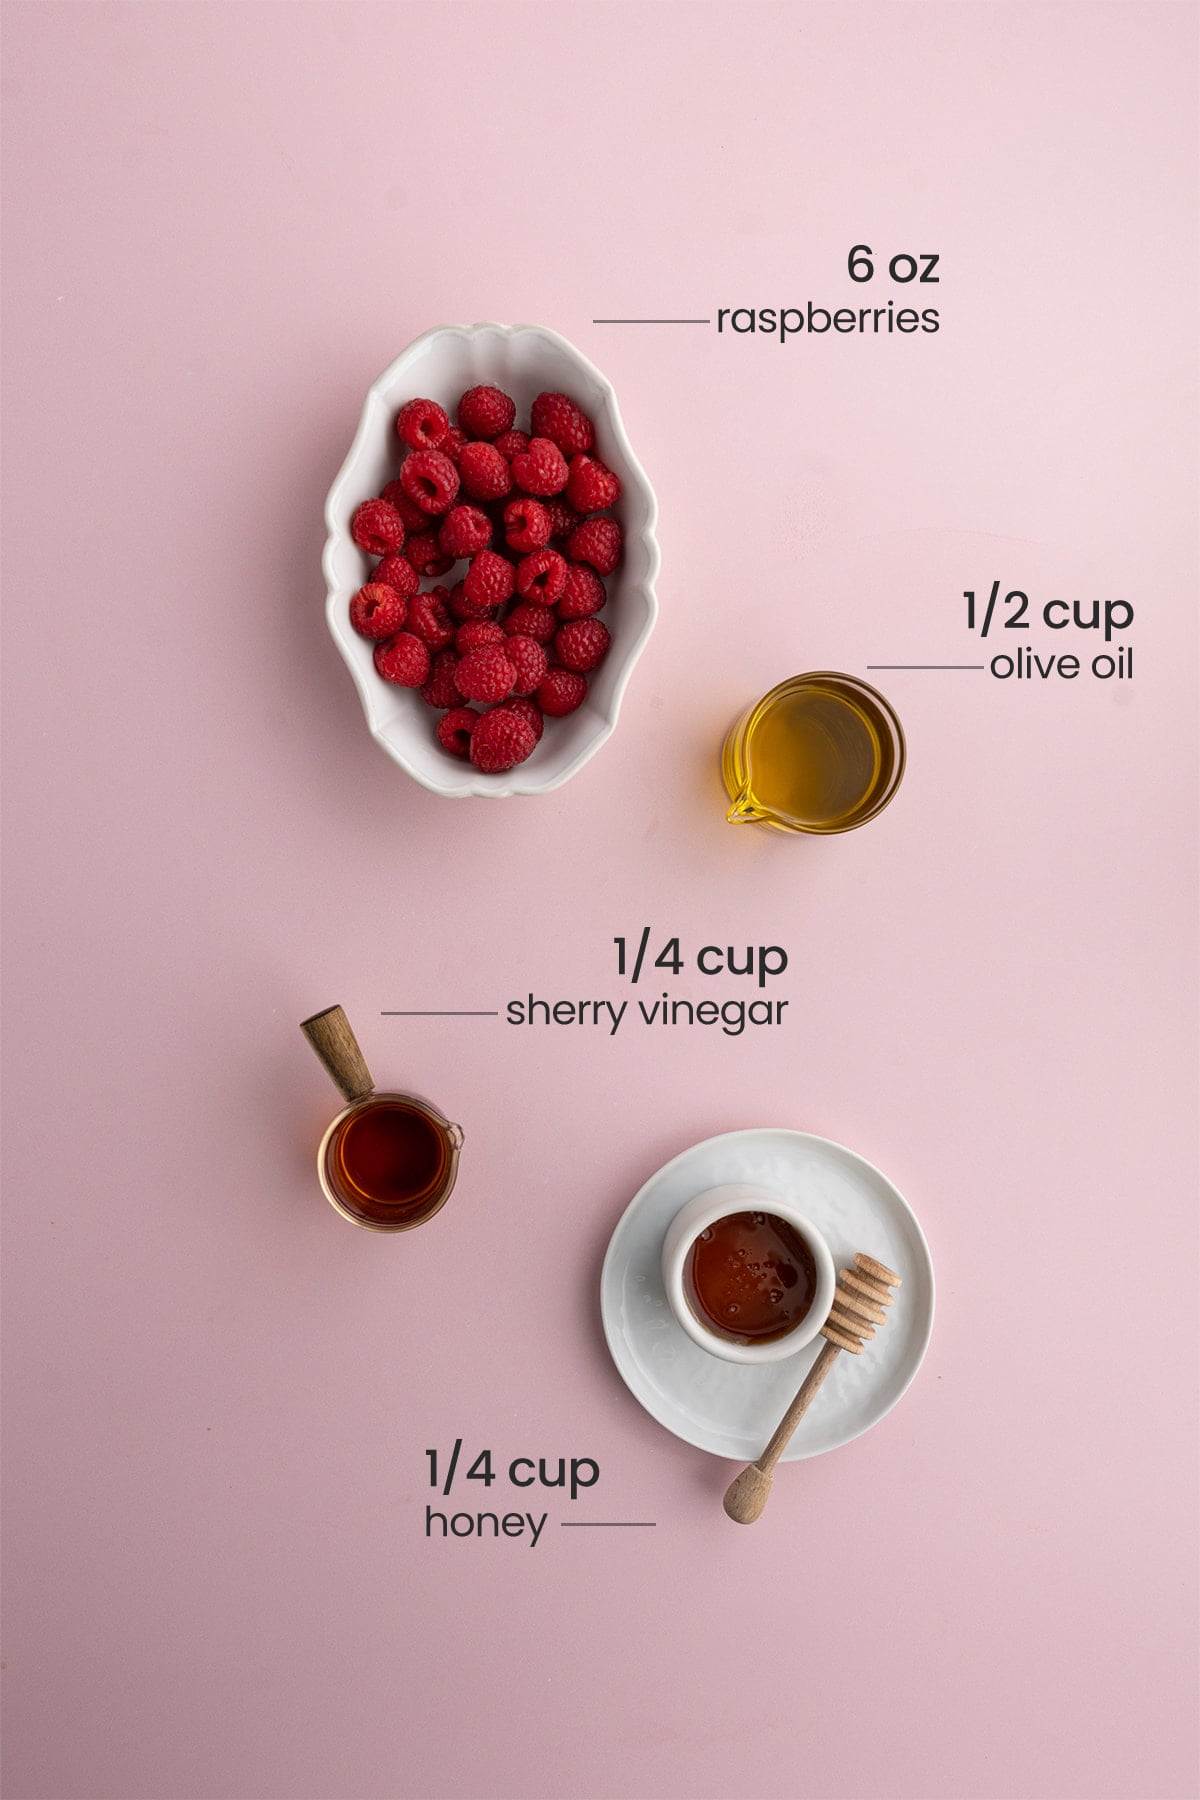 ingredients for raspberry vinaigrette - raspberries, olive oil, sherry vinegar, honey